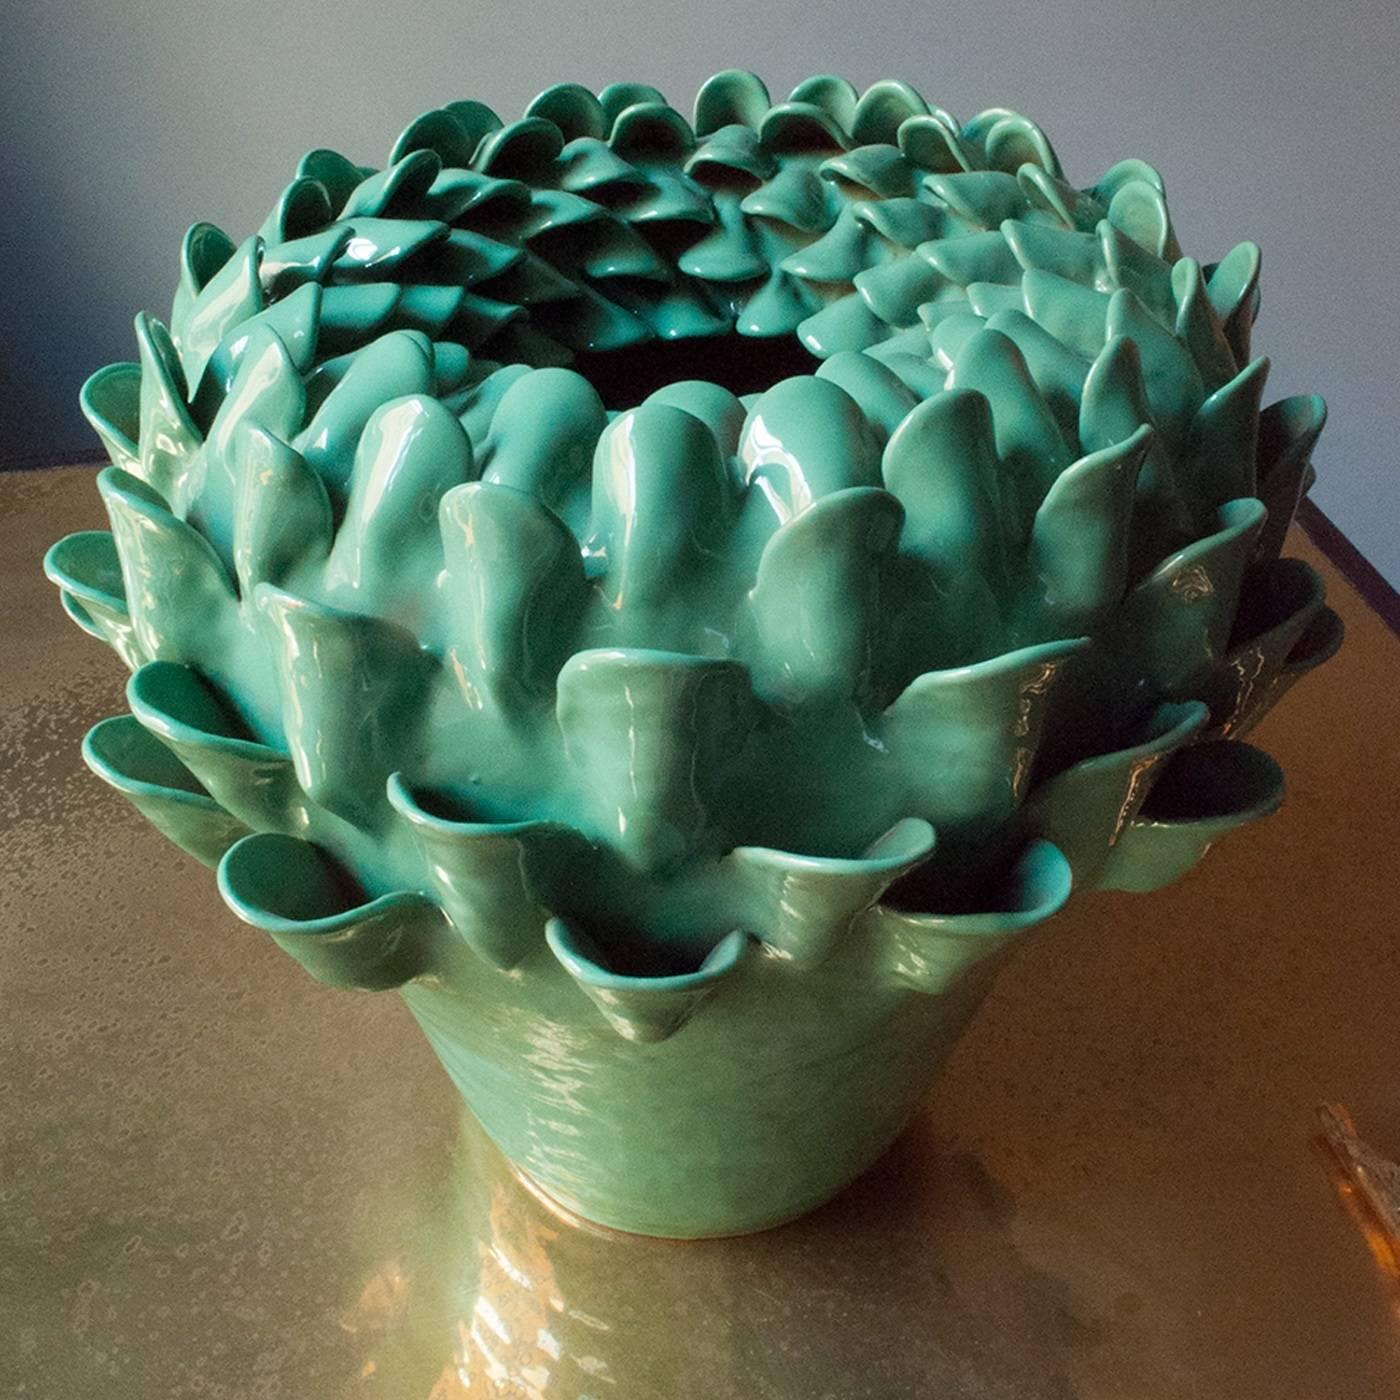 Diese auffällige Terrakotta-Vase aus der Kollektion Artemisia ist mit einem dichten, erhabenen Muster verziert, das einen dreidimensionalen Effekt erzeugt. Sie wird von erfahrenen Kunsthandwerkern vollständig von Hand gefertigt. Die knackig grüne